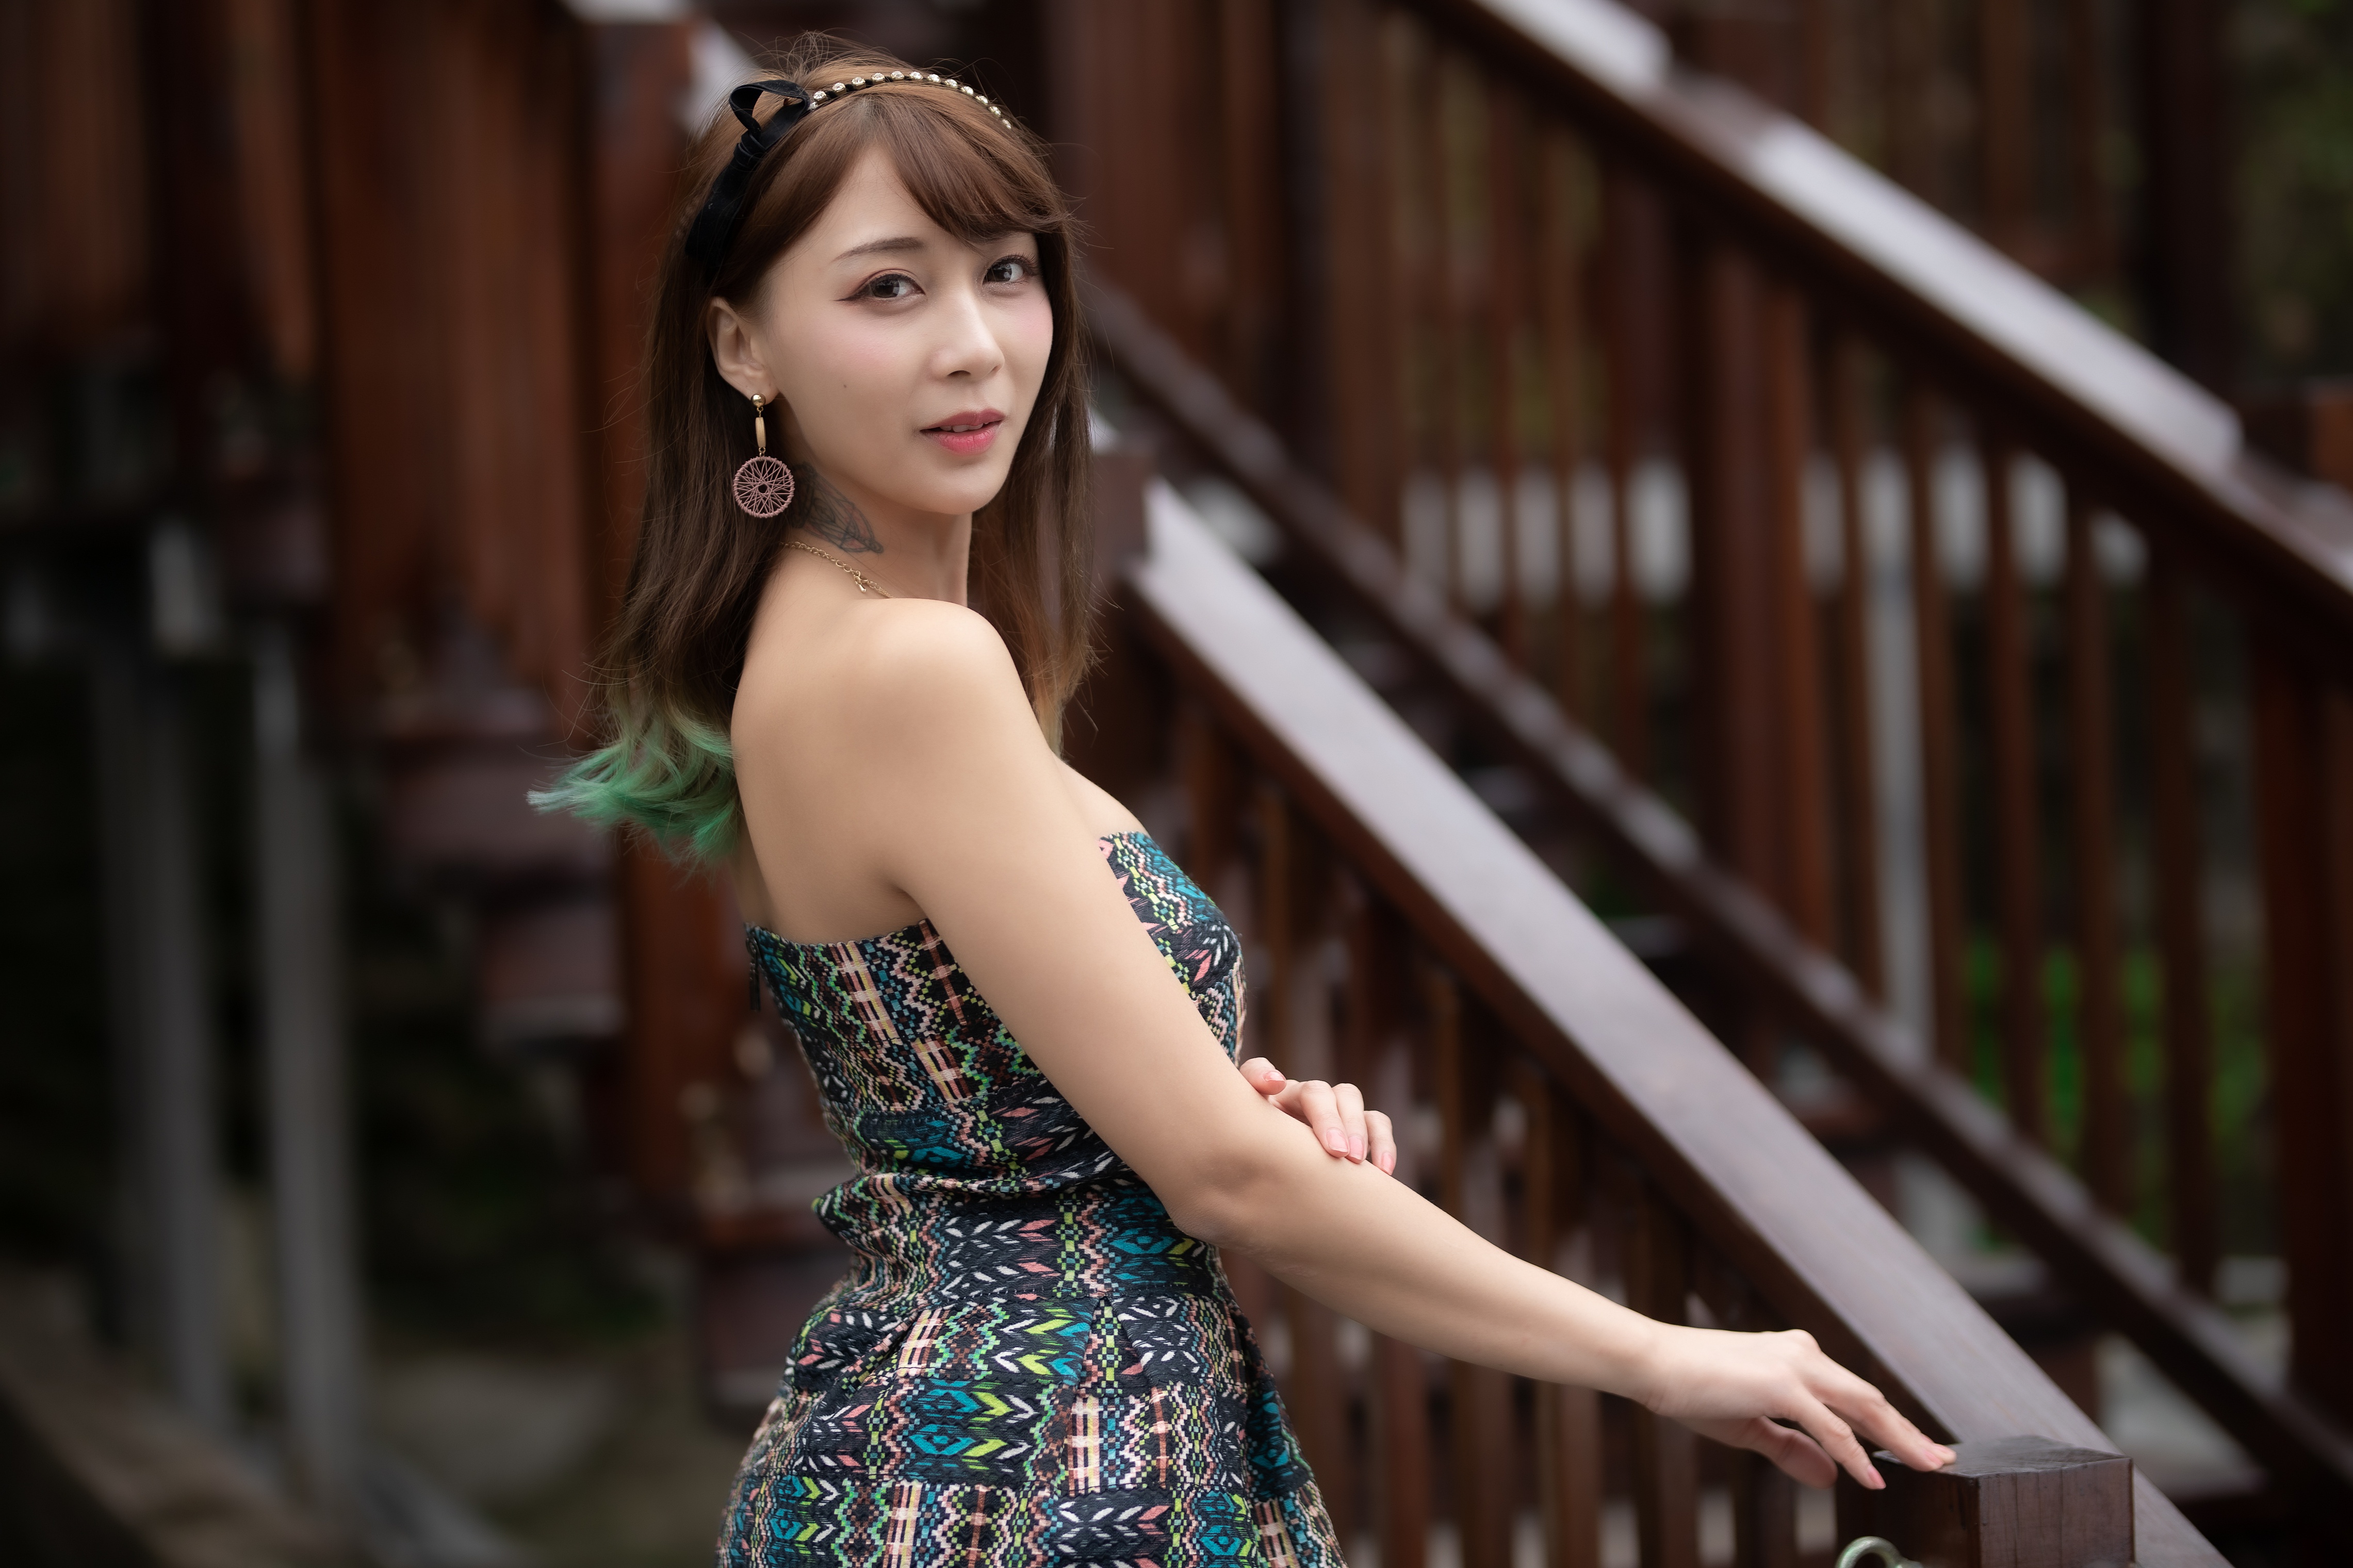 Asian Women Model Long Hair Brunette Railings Tattoo Earring Depth Of Field Dress Hairband Necklace 4562x3041